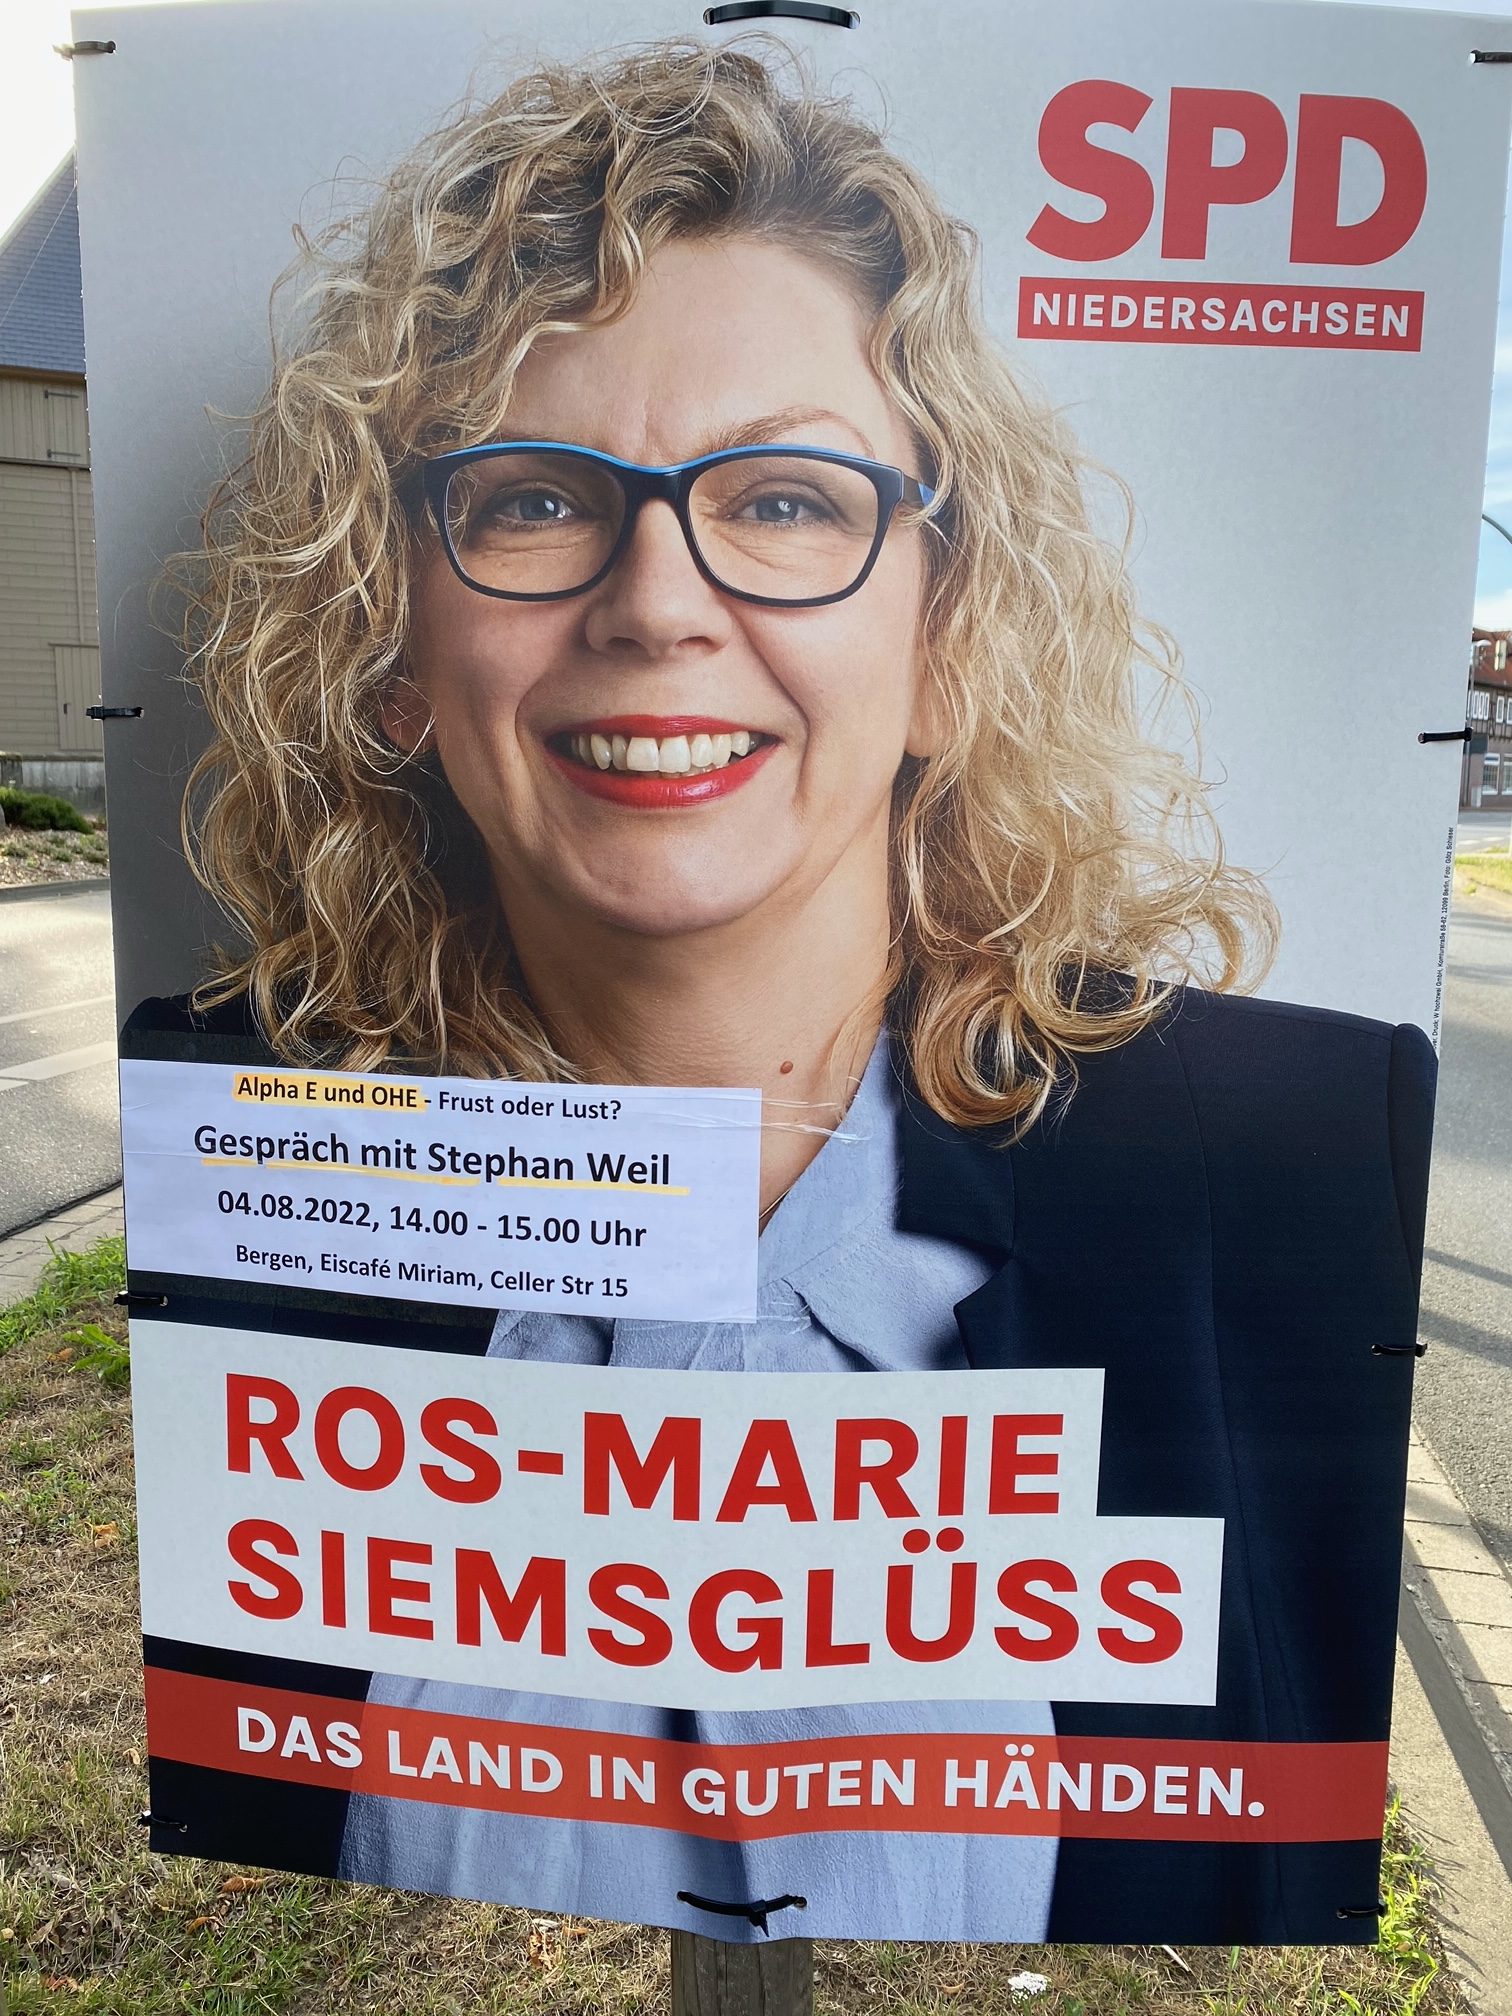 Ros-Marie Siemsglüss